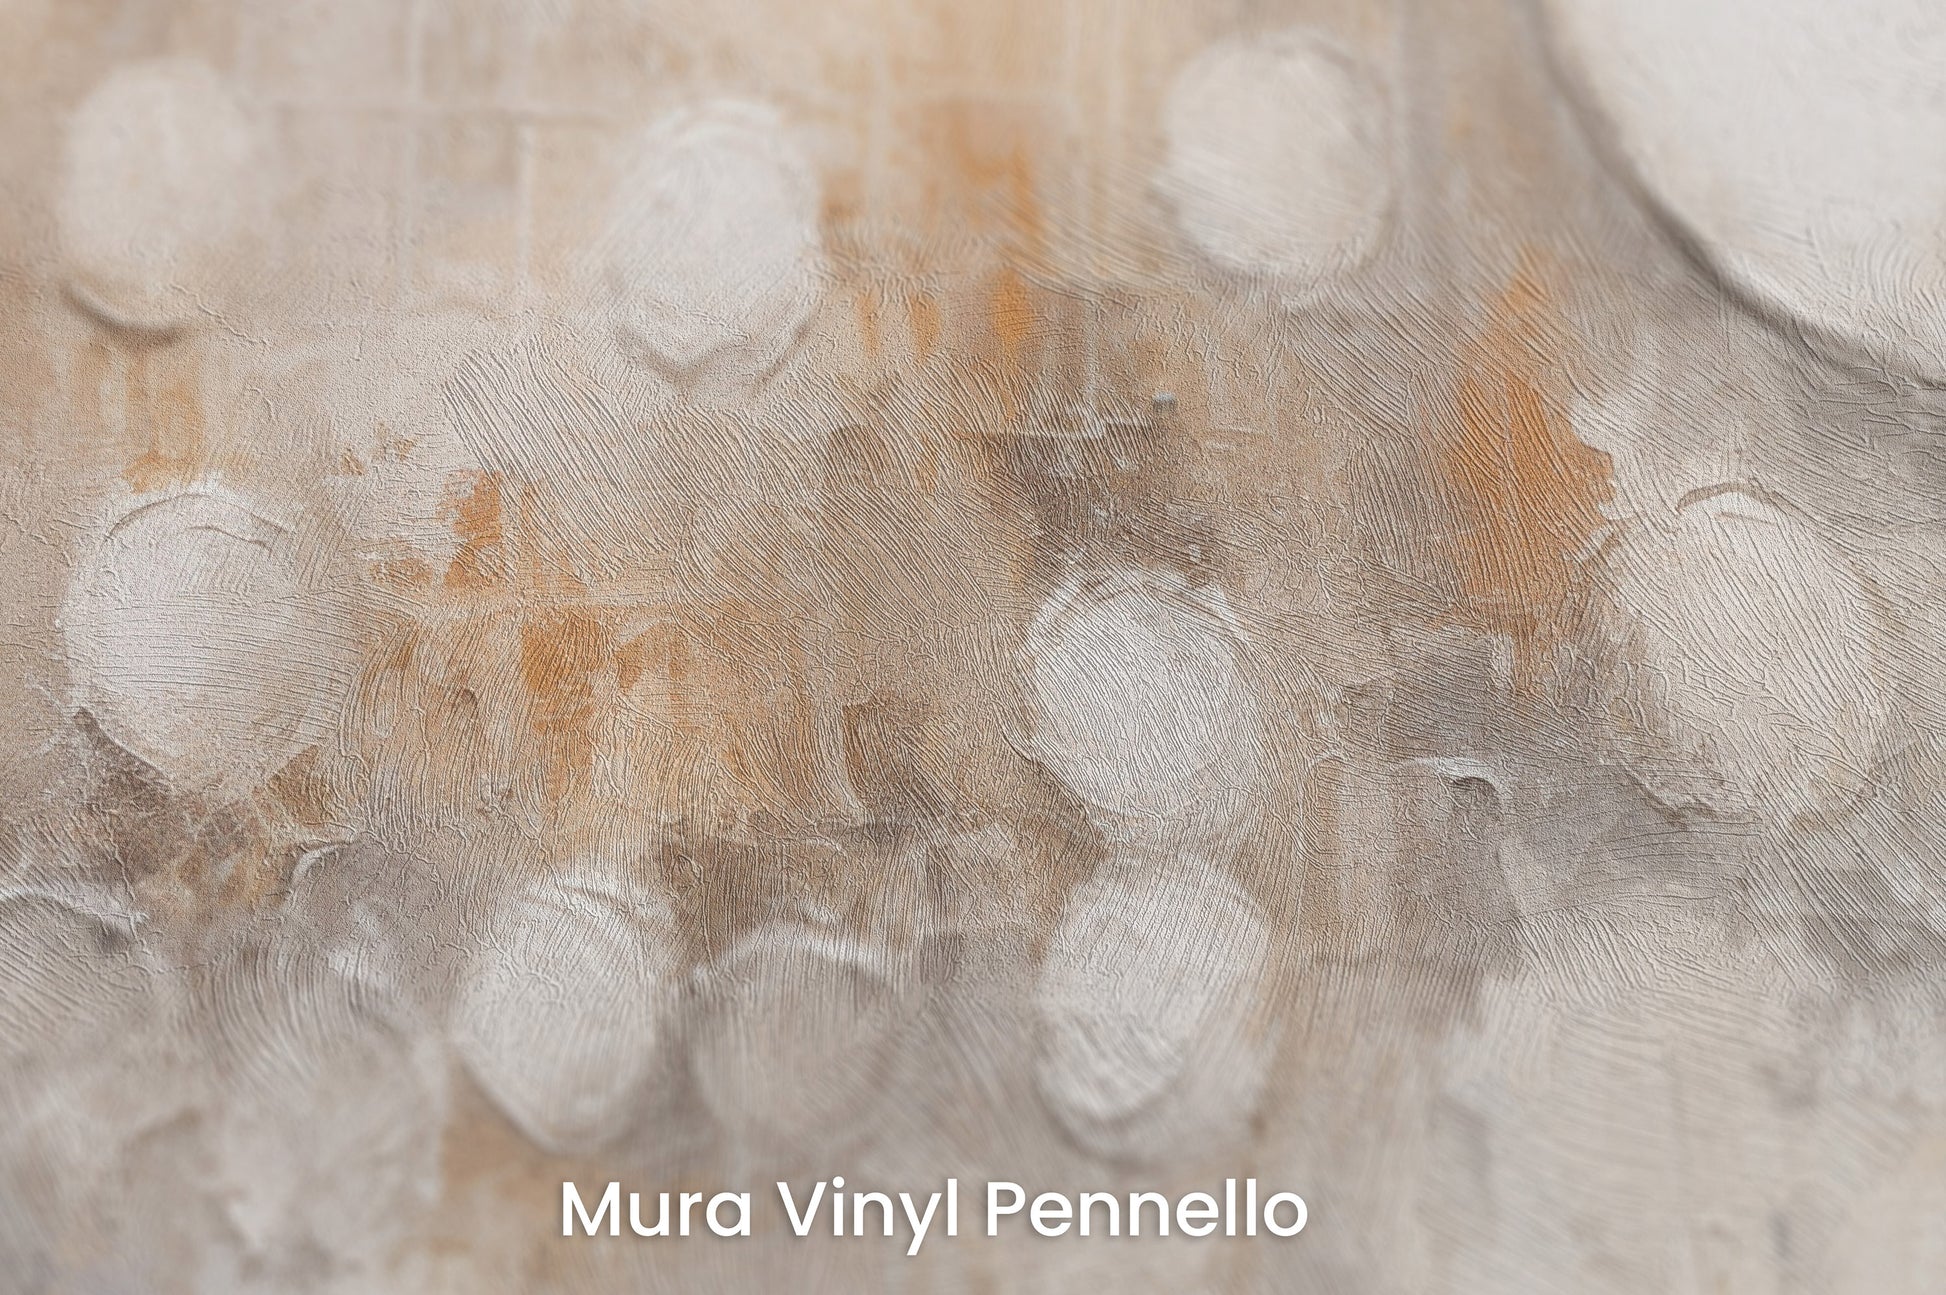 Zbliżenie na artystyczną fototapetę o nazwie SOFT GEOMETRIC CONSTELLATION na podłożu Mura Vinyl Pennello - faktura pociągnięć pędzla malarskiego.